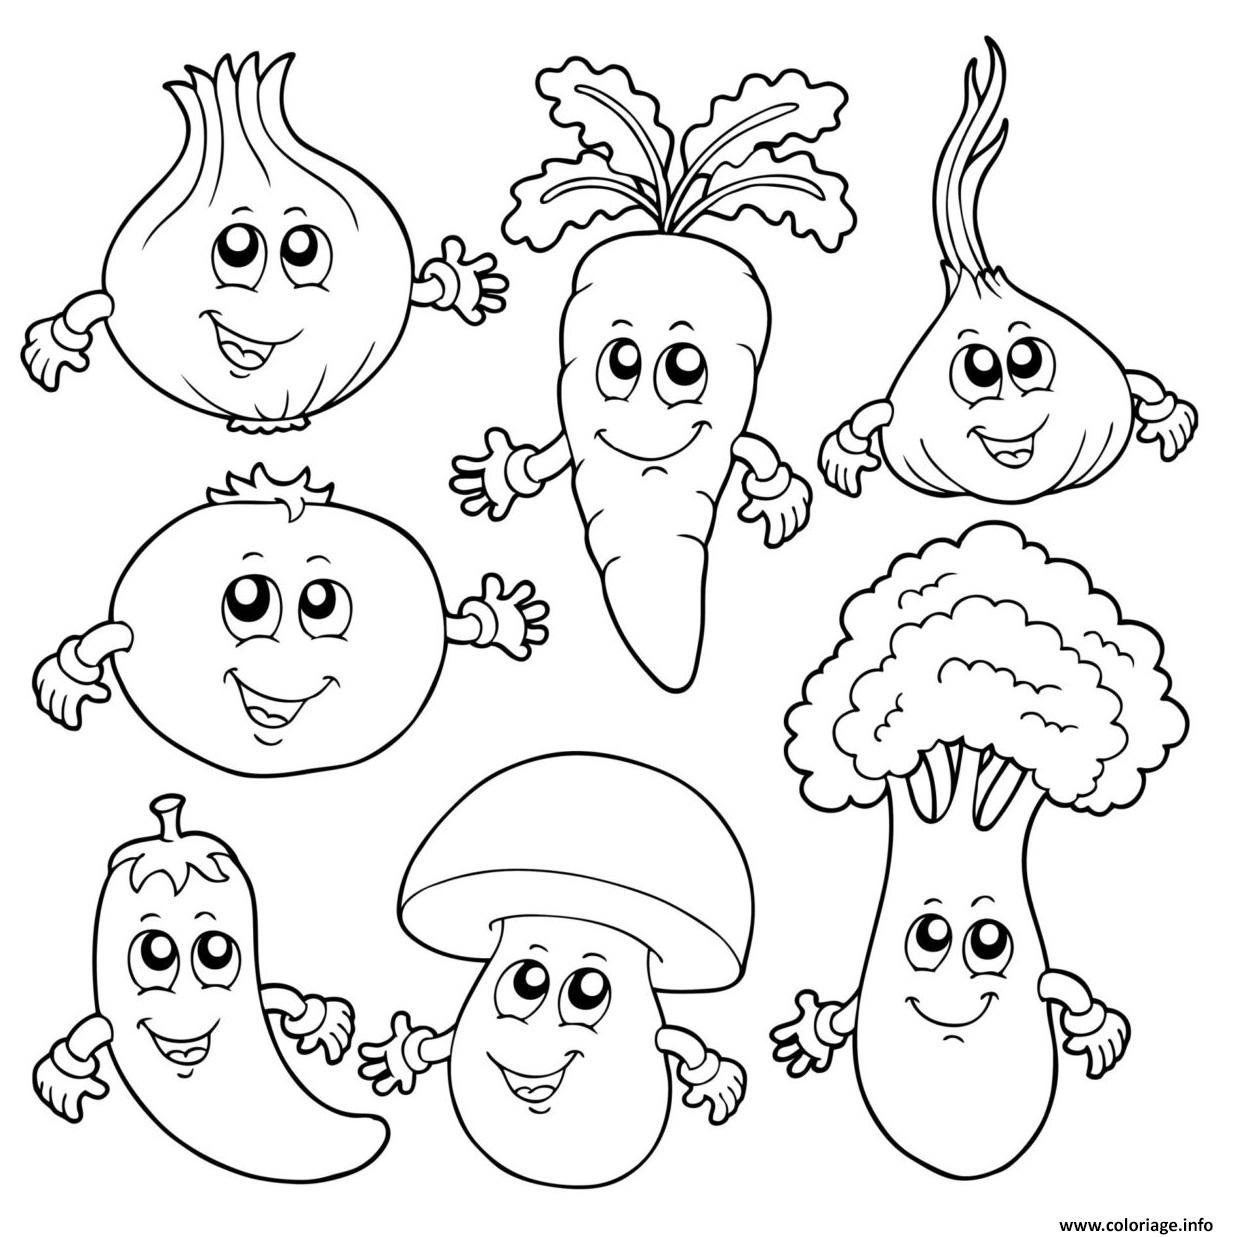 Coloriage legumes pour le repas action de grace - JeColorie.com